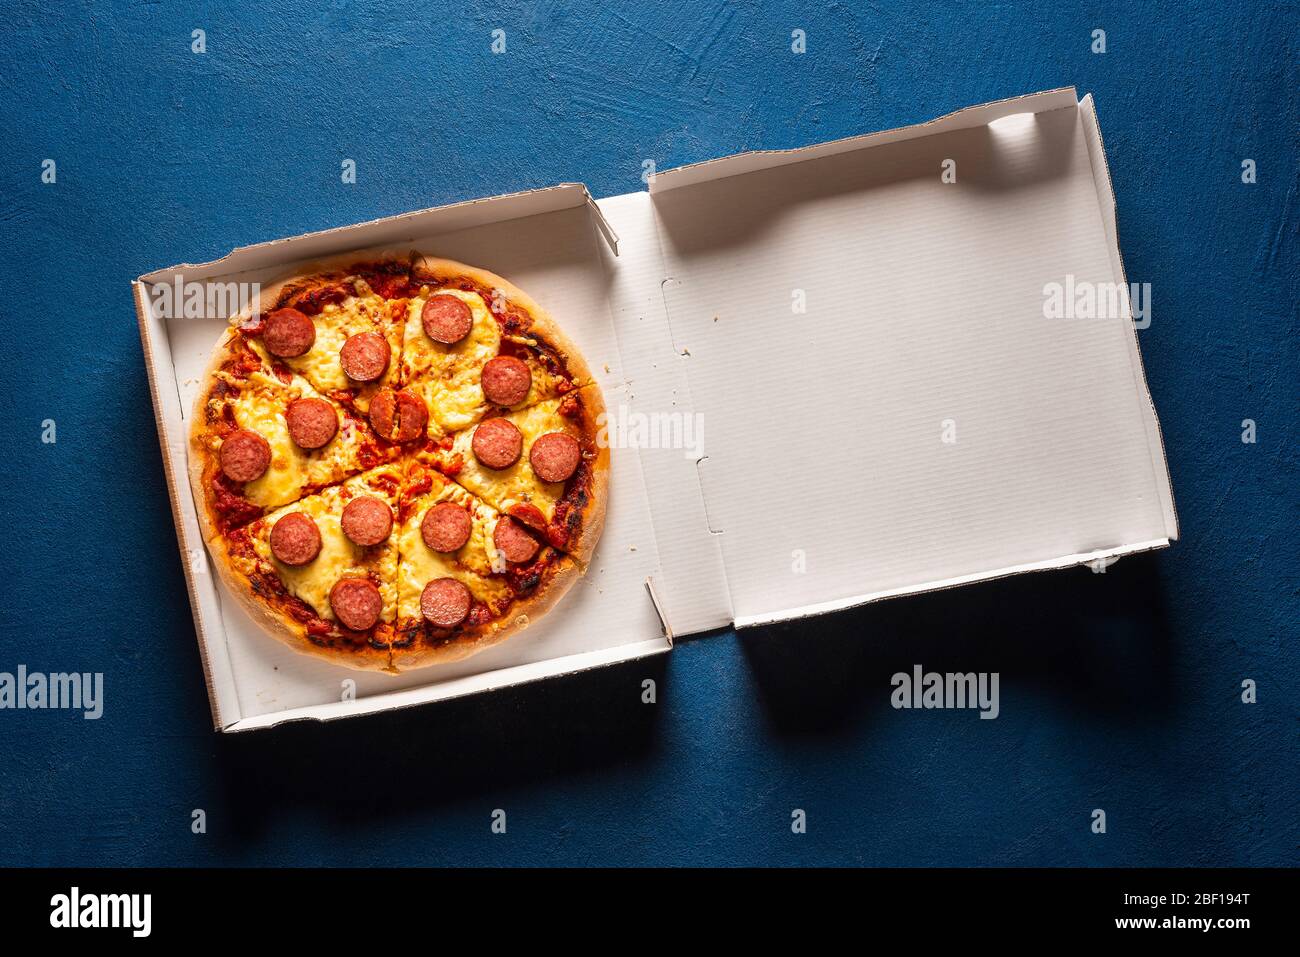 фото пепперони пицца в коробке фото 84